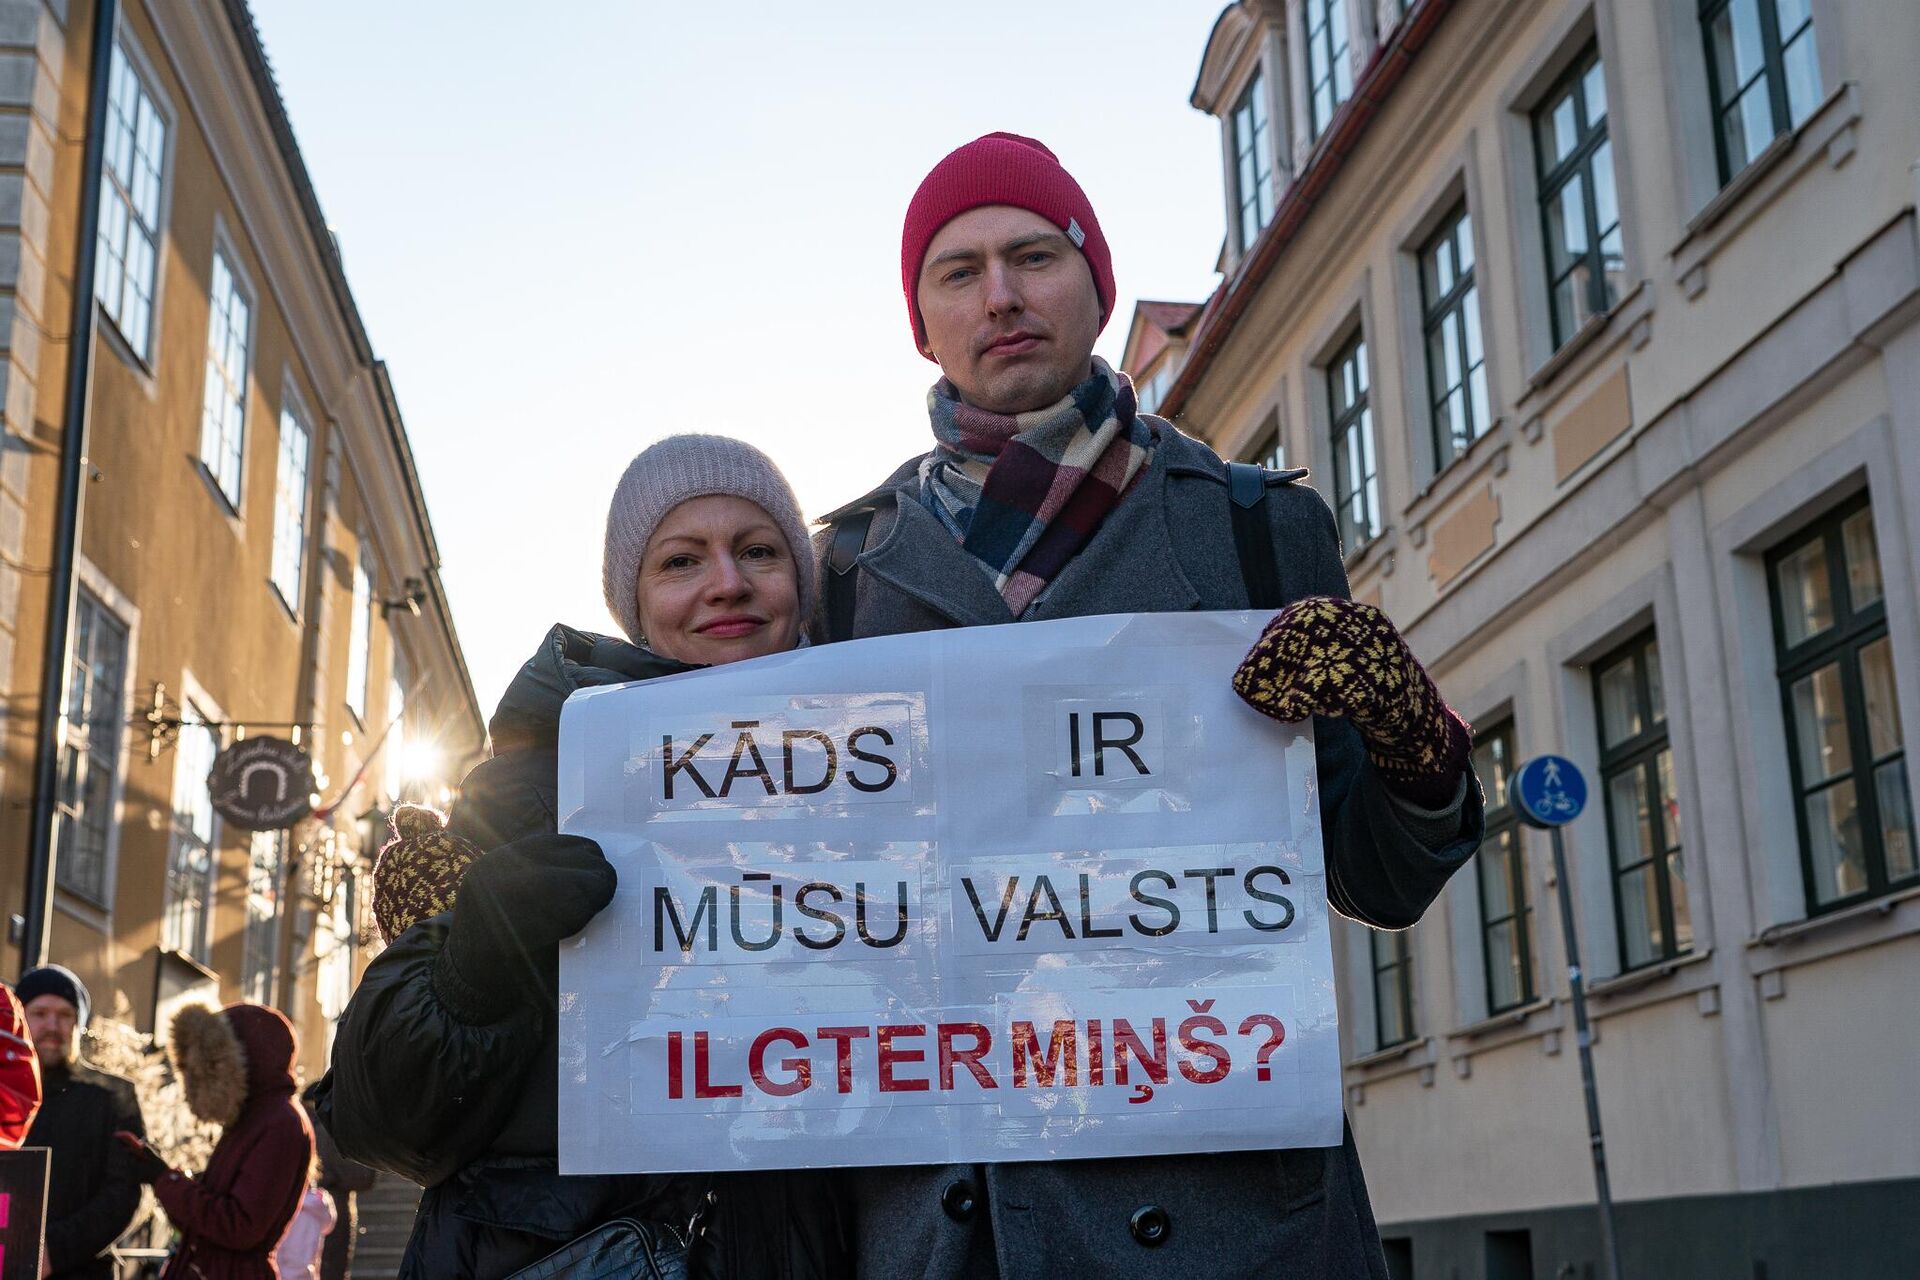 Акция протеста у Сейма Латвии против поправок в Закон о гражданском союзе, позволяющих урегулировать отношения однополым парам  - Sputnik Латвия, 1920, 31.03.2022